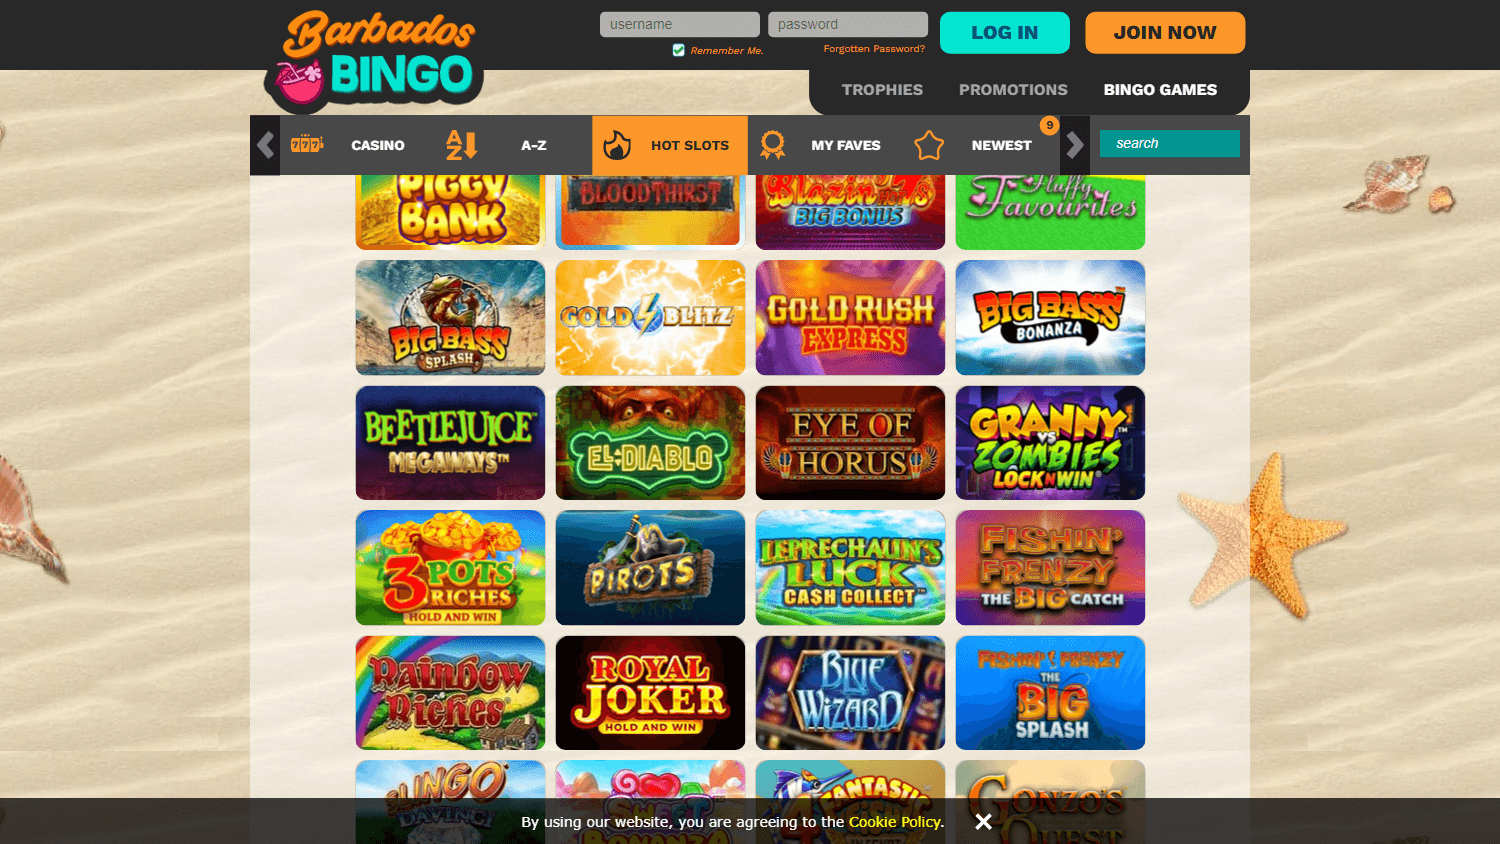 barbados_bingo_casino_game_gallery_desktop